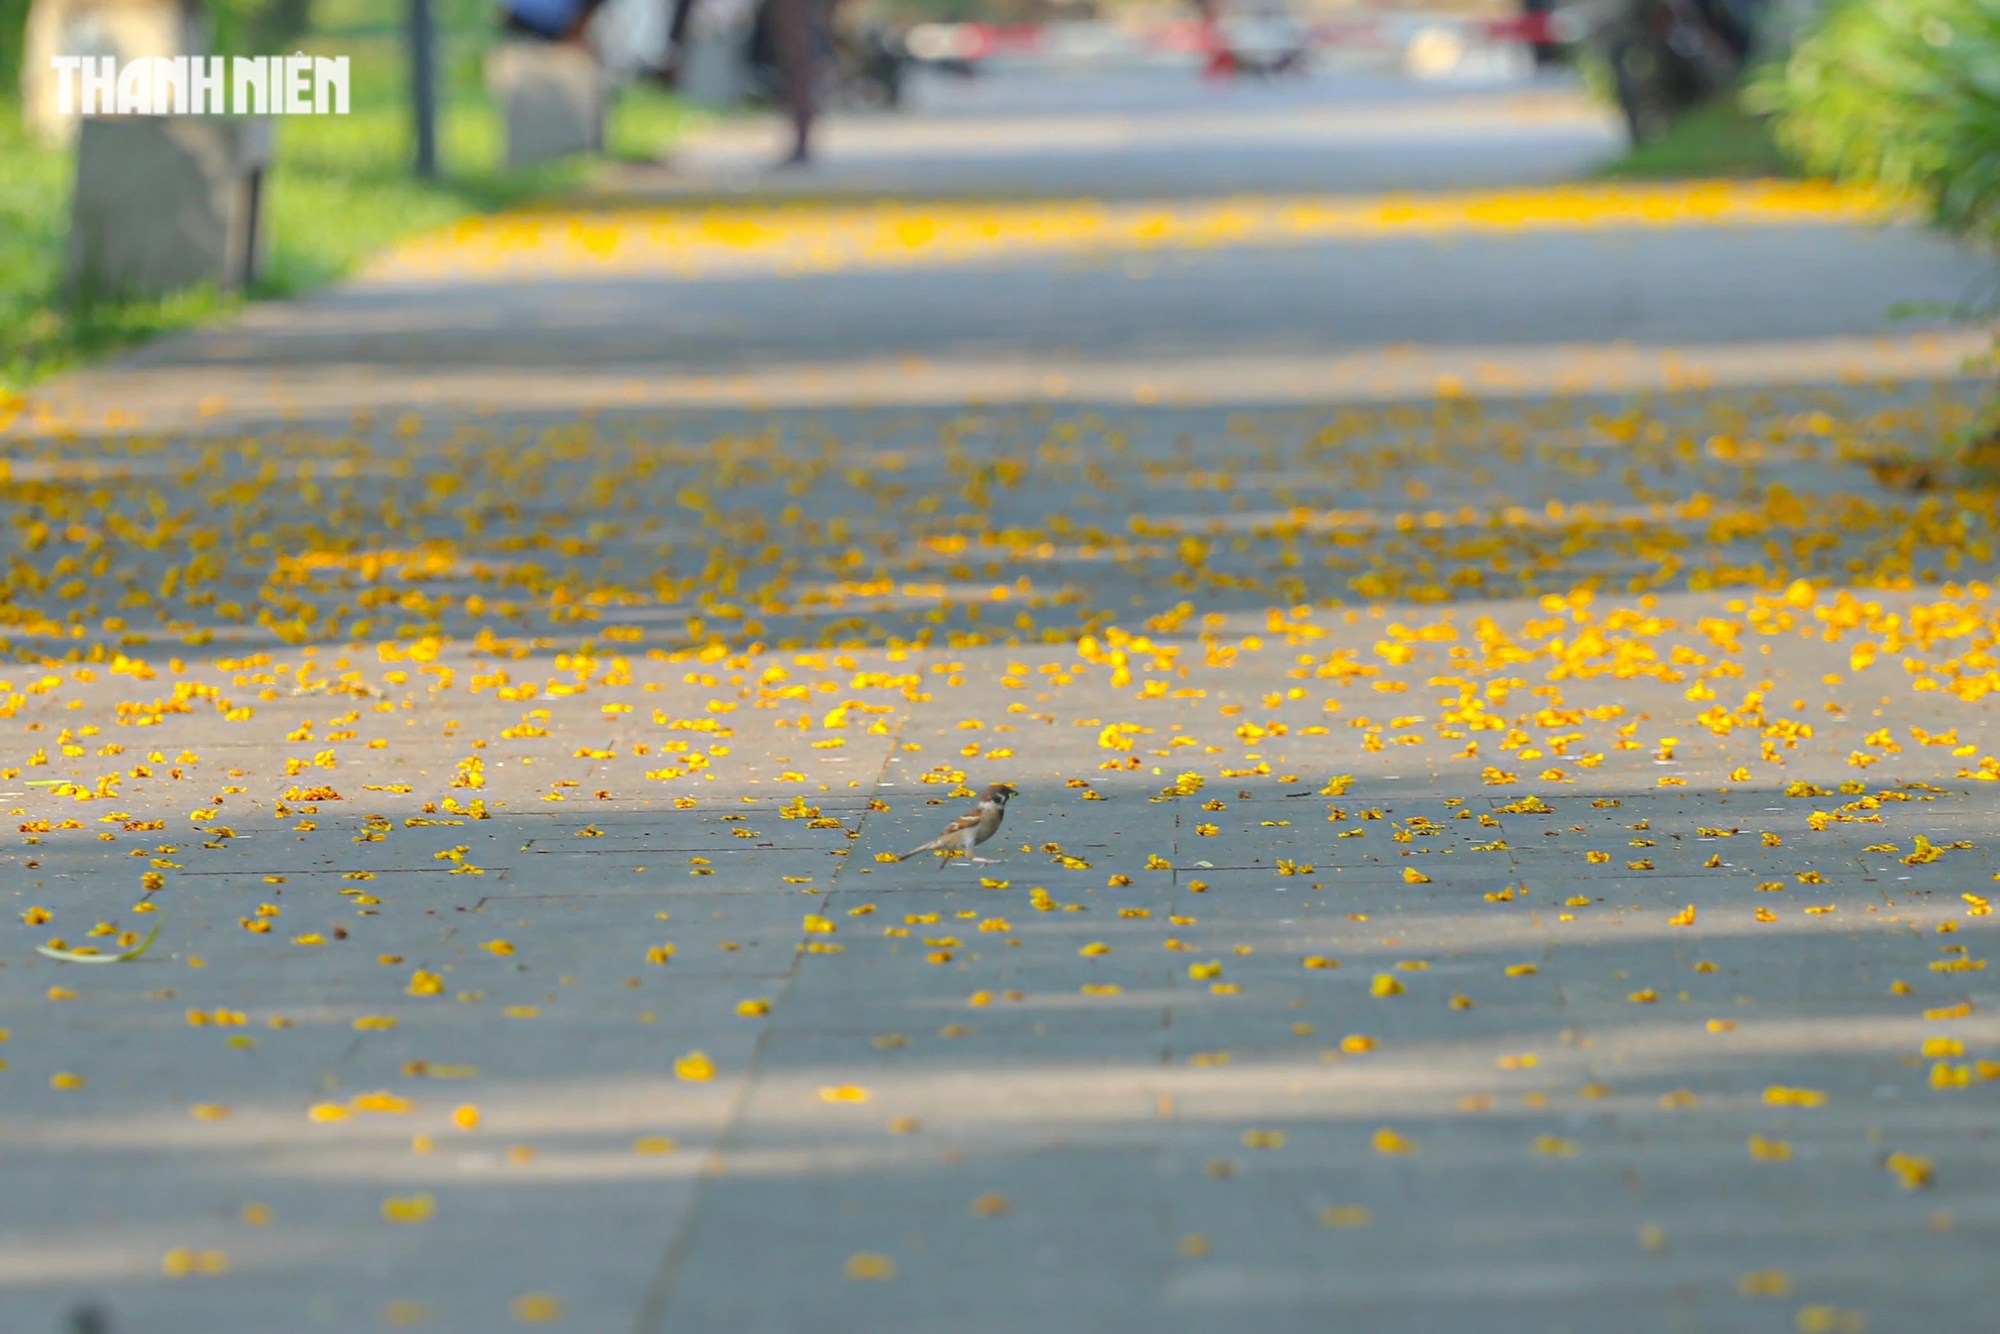 Sau cơn gió, mùa hoa điệp rơi rụng, tạo thành một dải lụa sặc sỡ, trải dài các con đường trong công viên xứ Huế